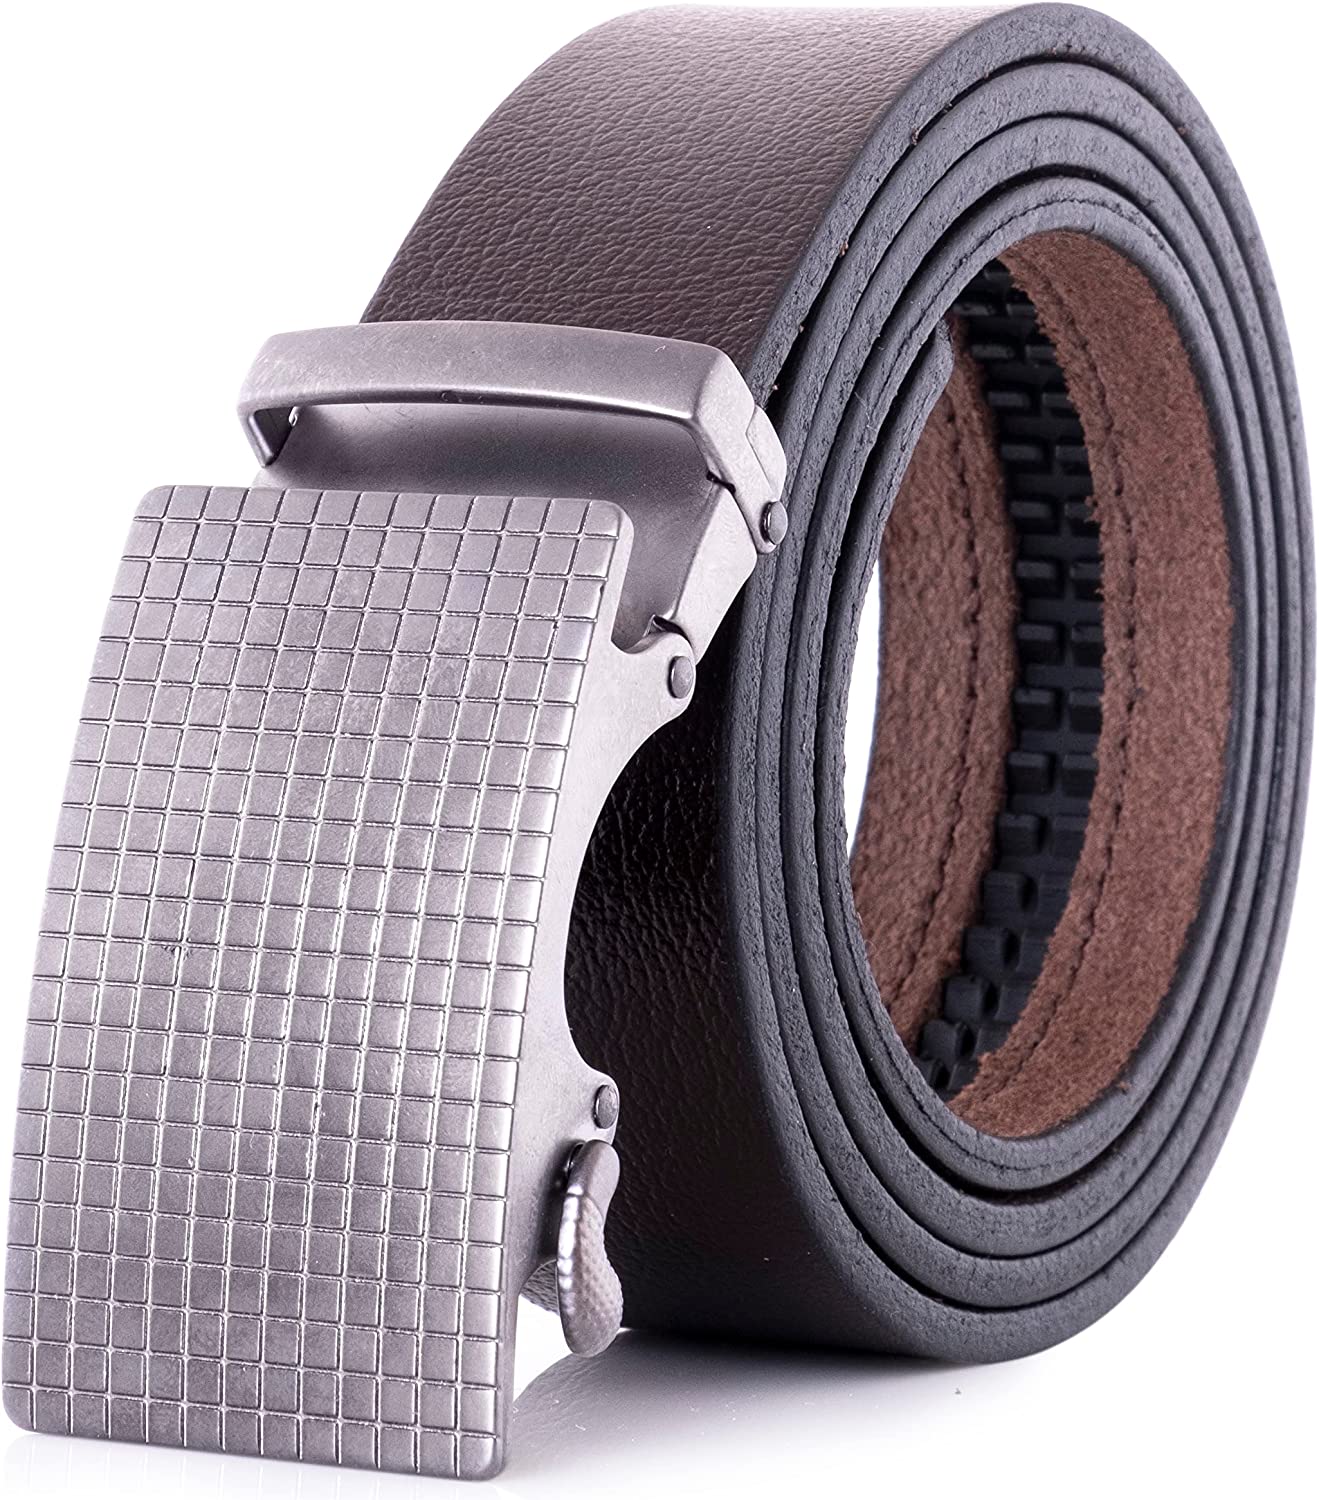 Ferrara Leather Belt